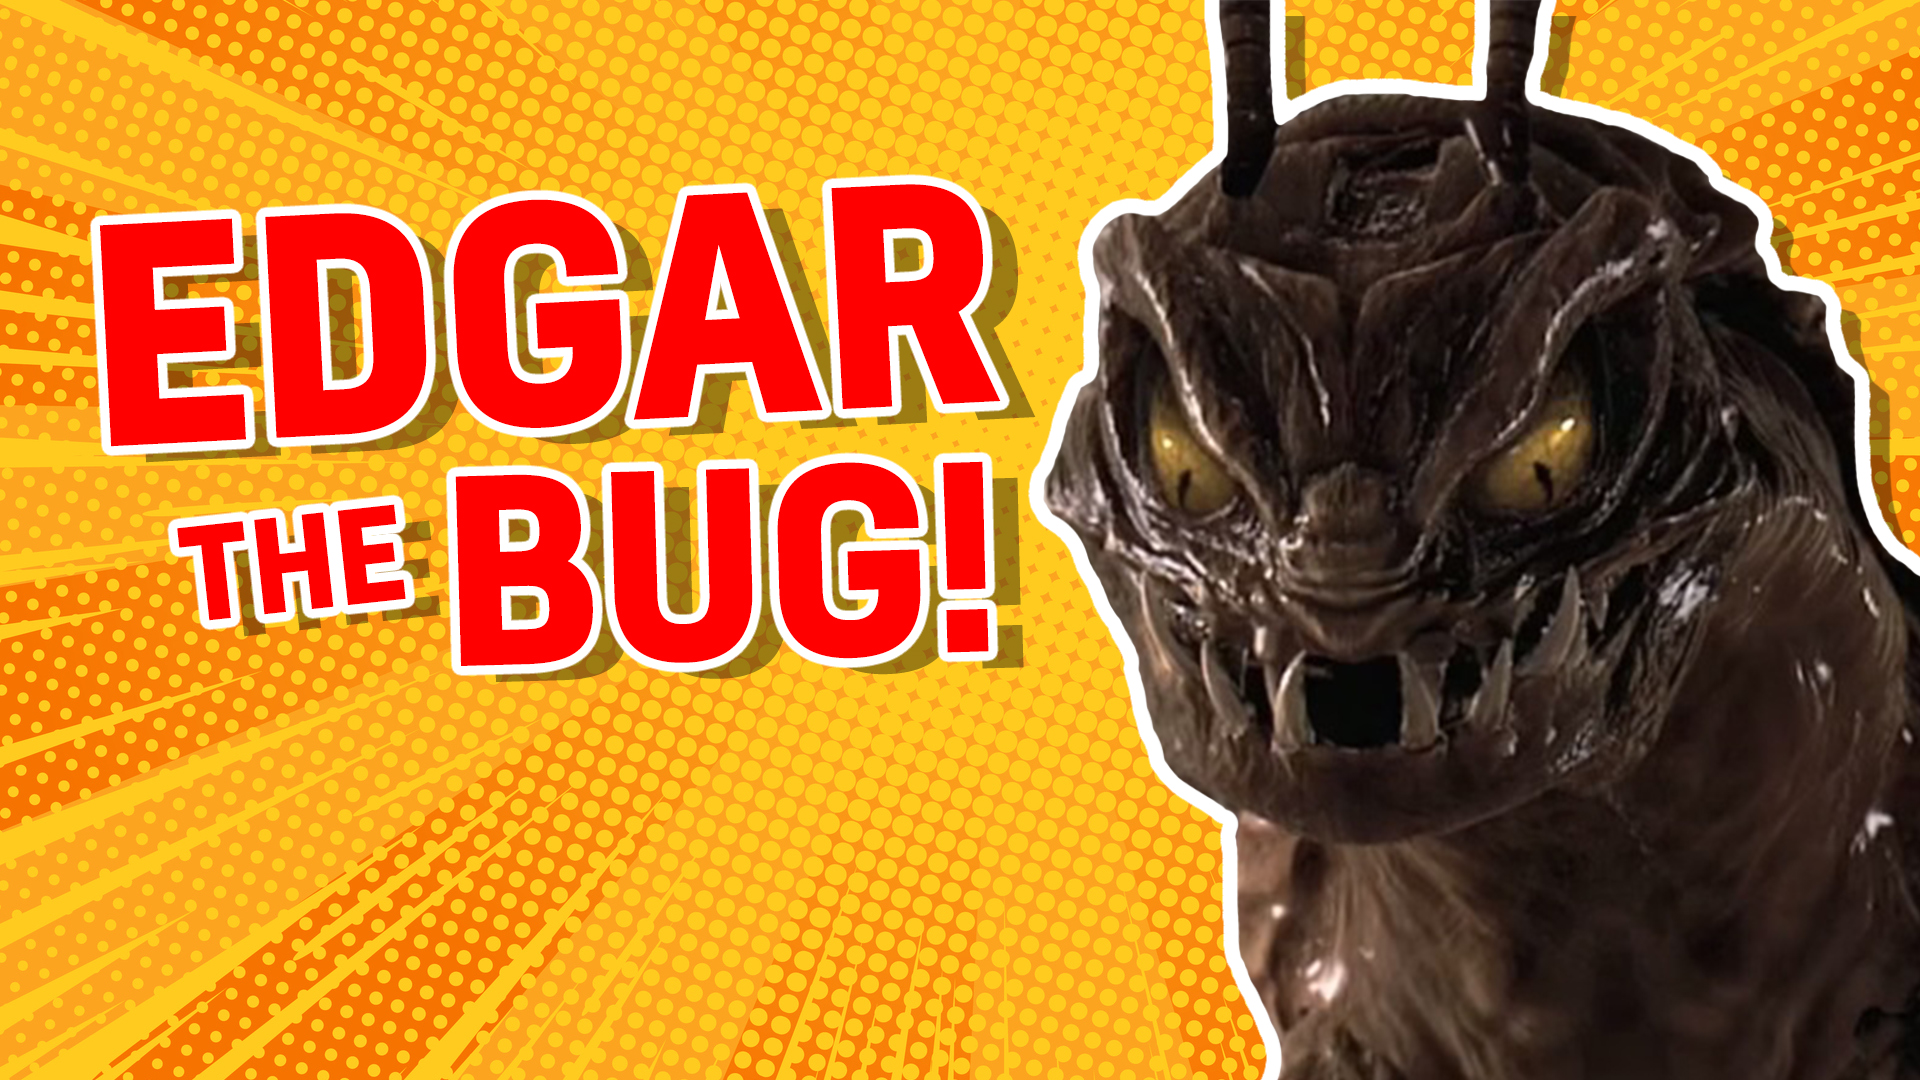 Edgar the Bug